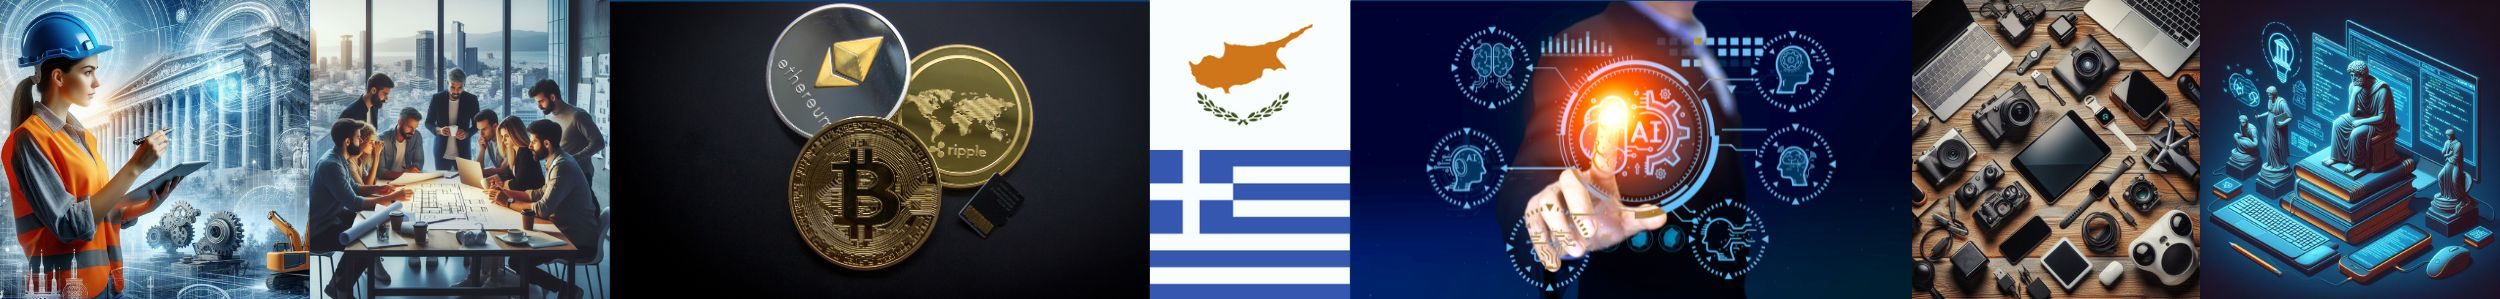 greek tech space